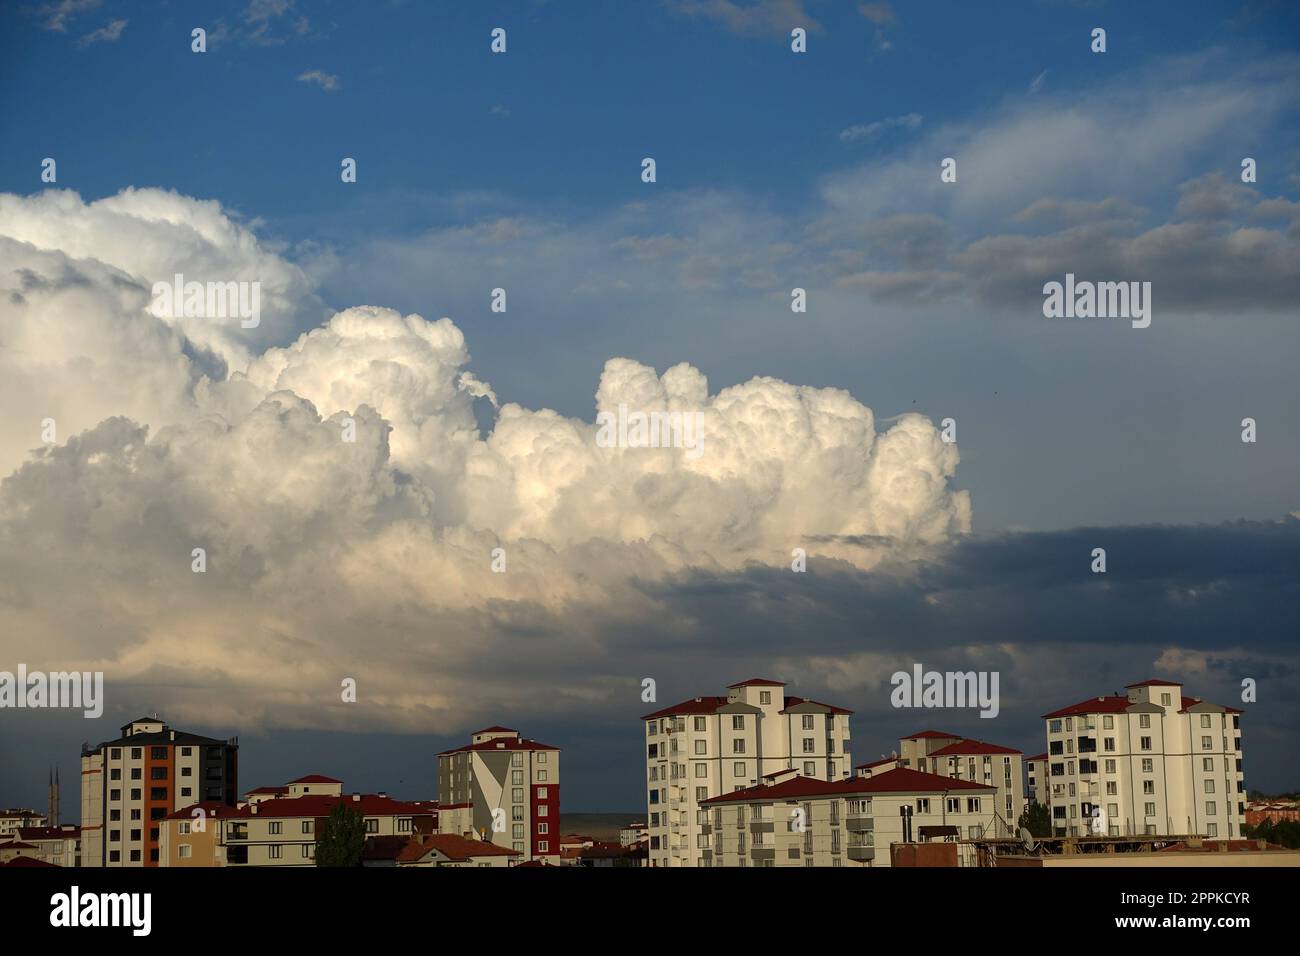 kumuluswolken, aufgeblasene Wolken, gehäufte weiße Wolken, Stadt und große Wolken. Stockfoto